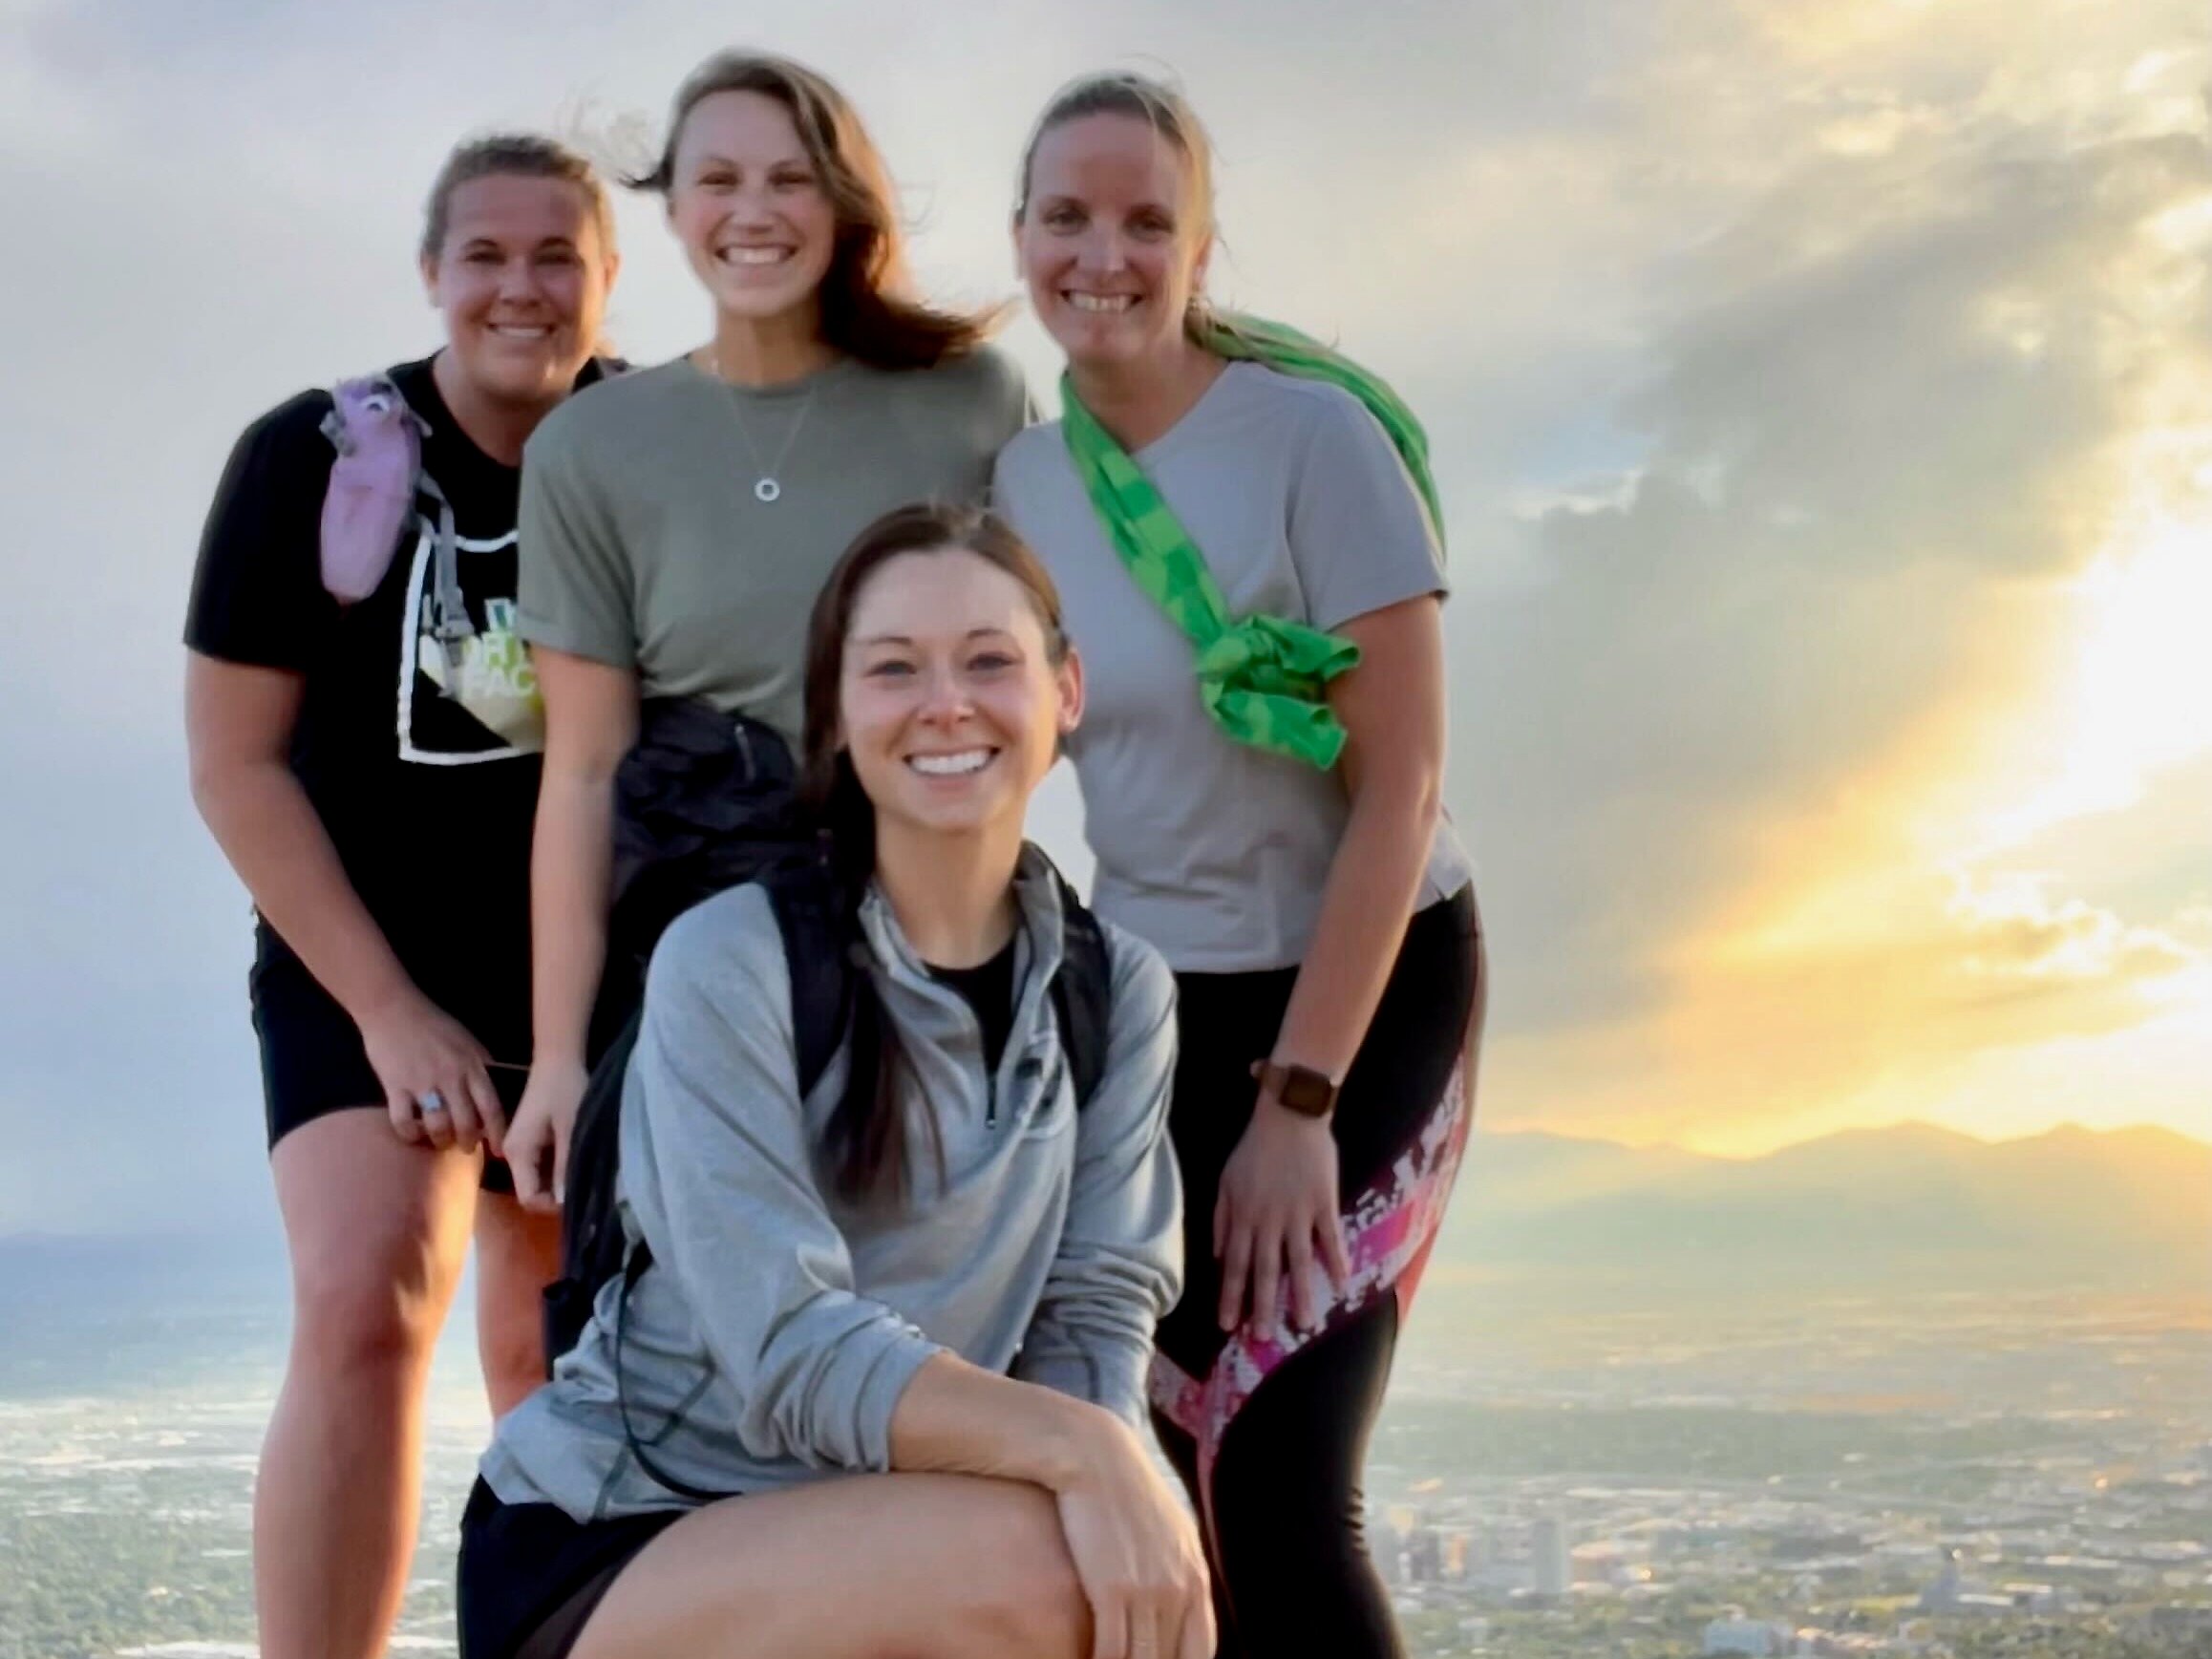 Four Navan women employees standing on a hill overlooking an urban landscape at sunset